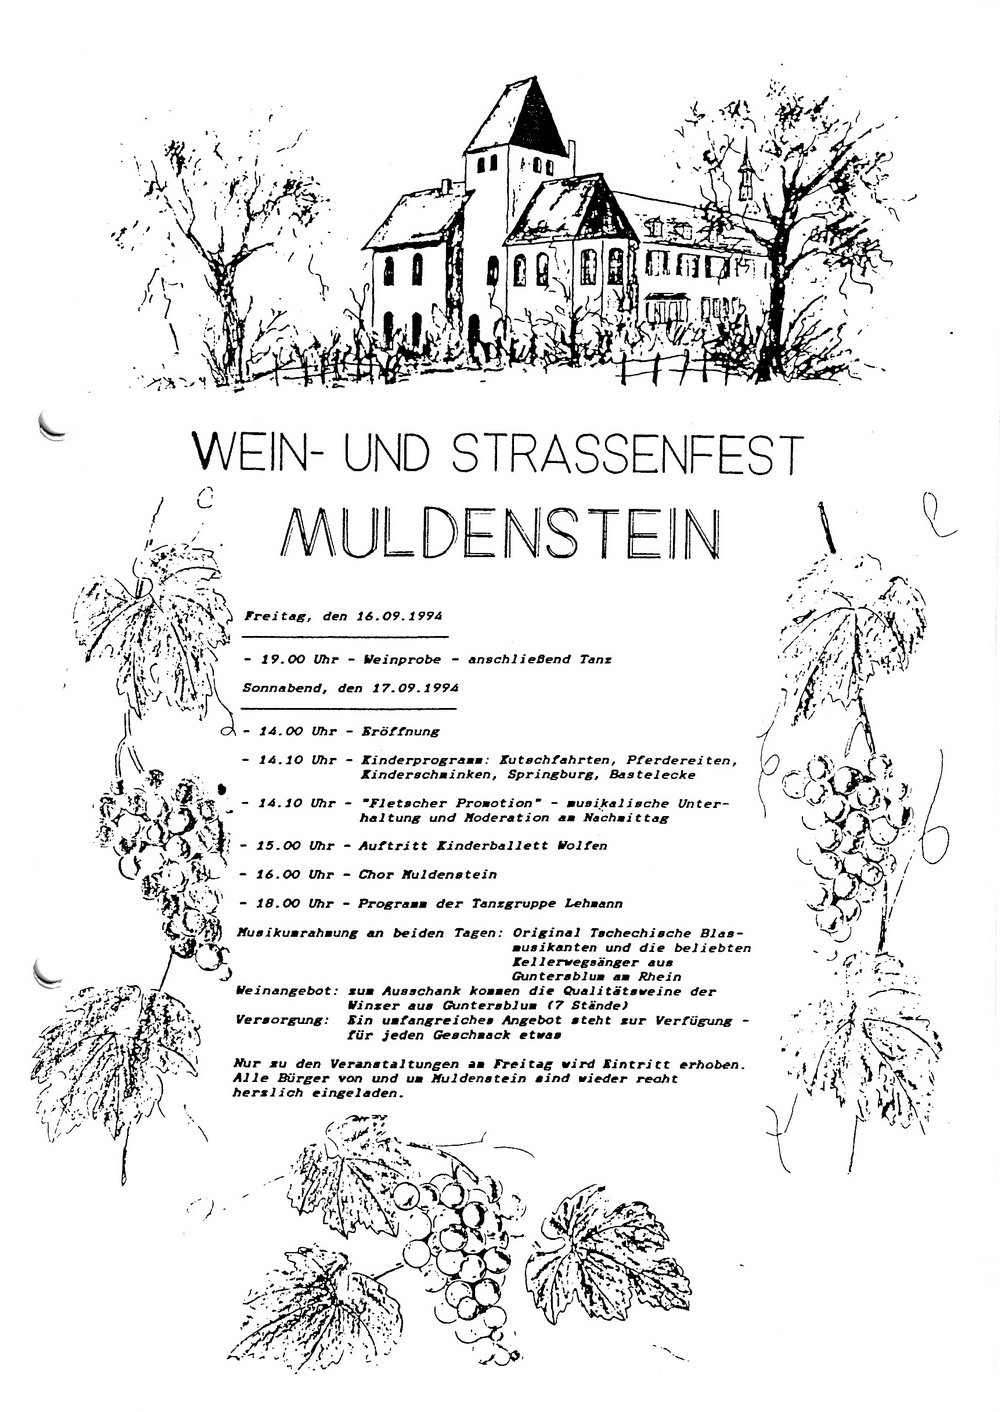 Wein- und Straßenfest in Muldenstein (Kulturverein Guntersblum CC BY-NC-SA)